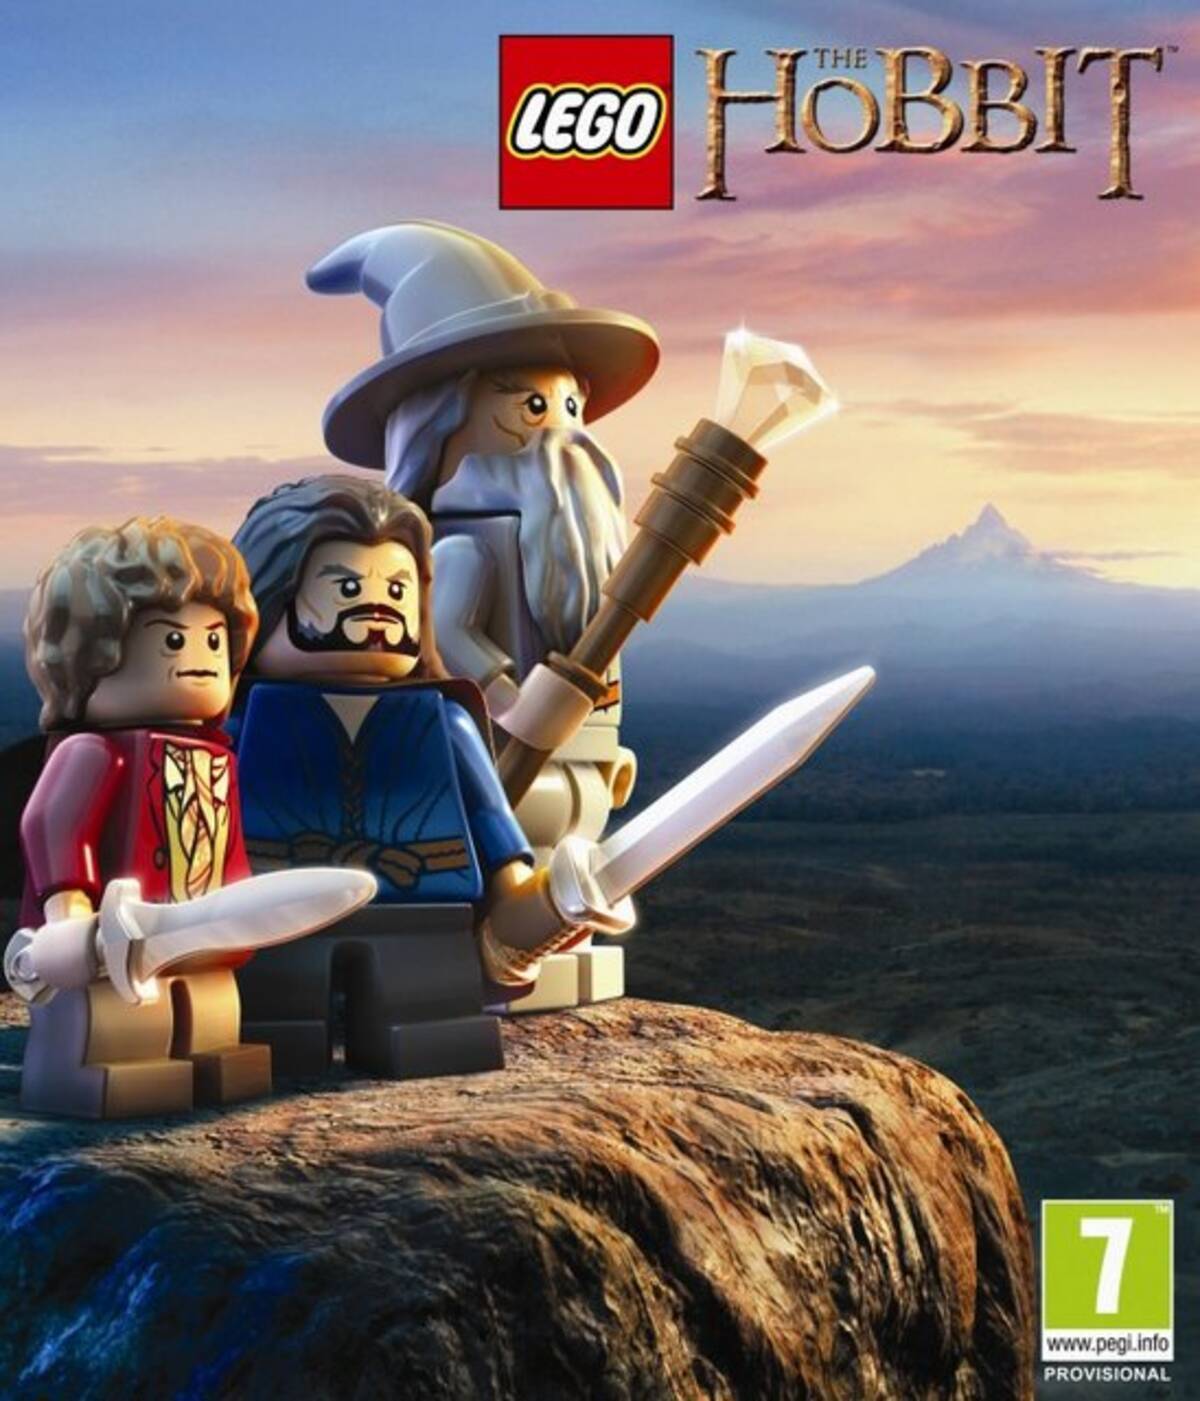 映画 ホビット をモチーフとしたレゴゲームの新作 Lego The Hobbit が14年にwii Uや3ds含むマルチプラットフォーム向けに発売 13年11月26日 エキサイトニュース